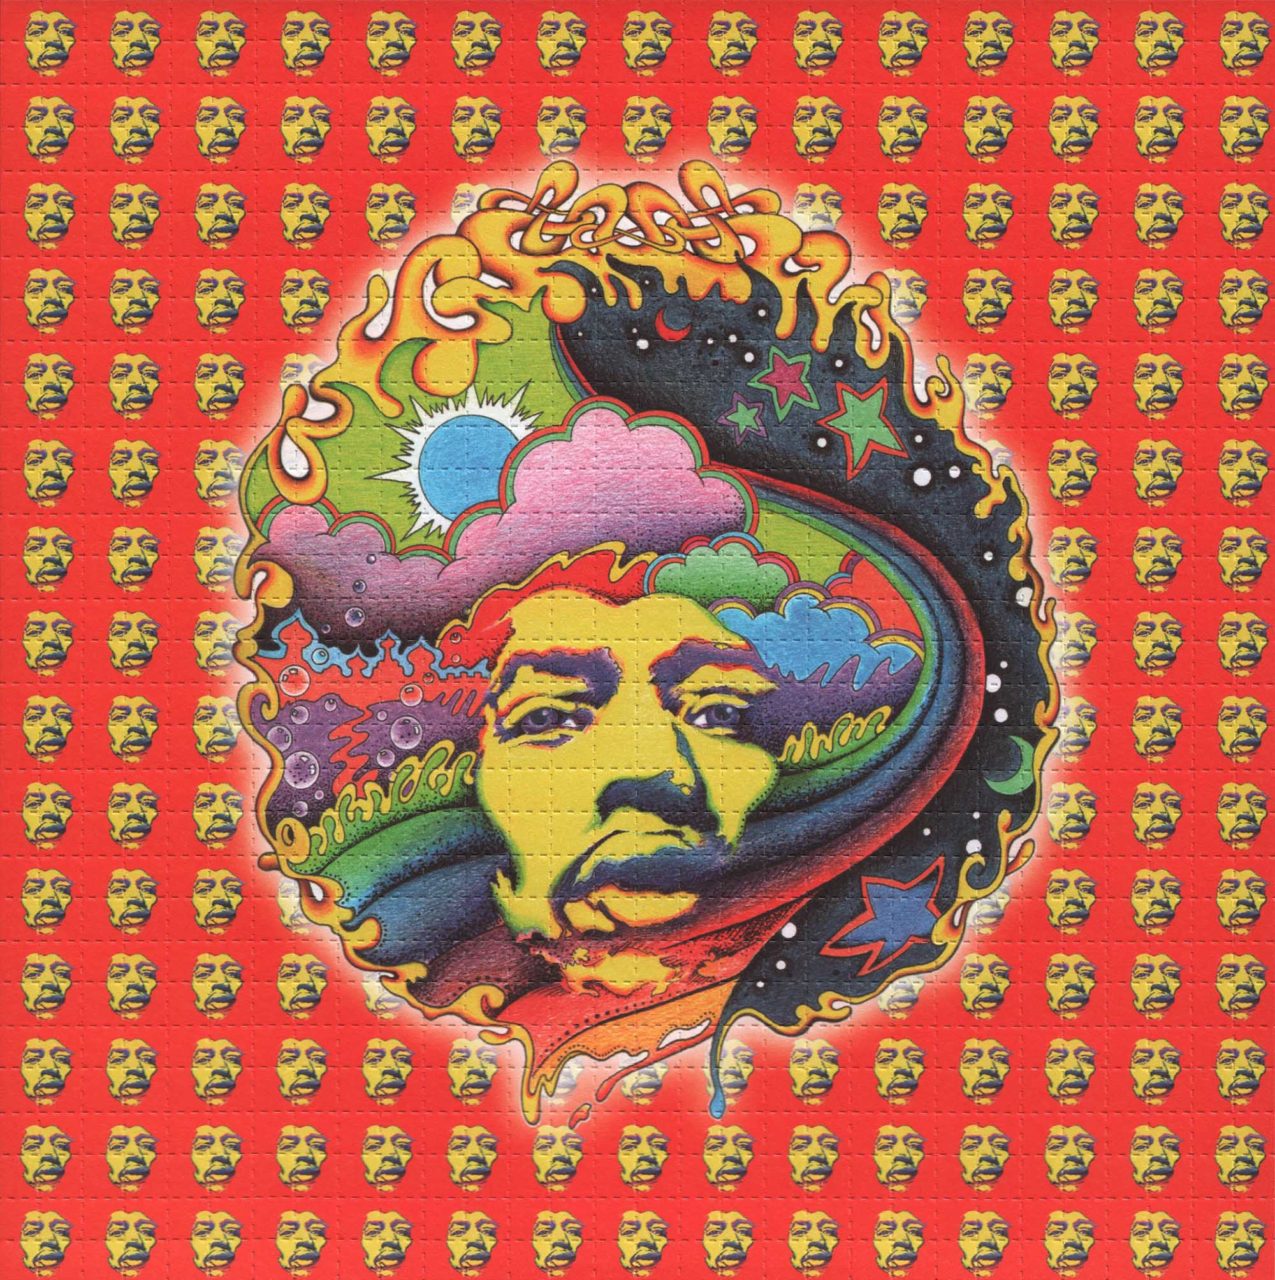 Framed Jimi Hendrix Red by Jeff Hopp 19cm x 19cm Blotter Art